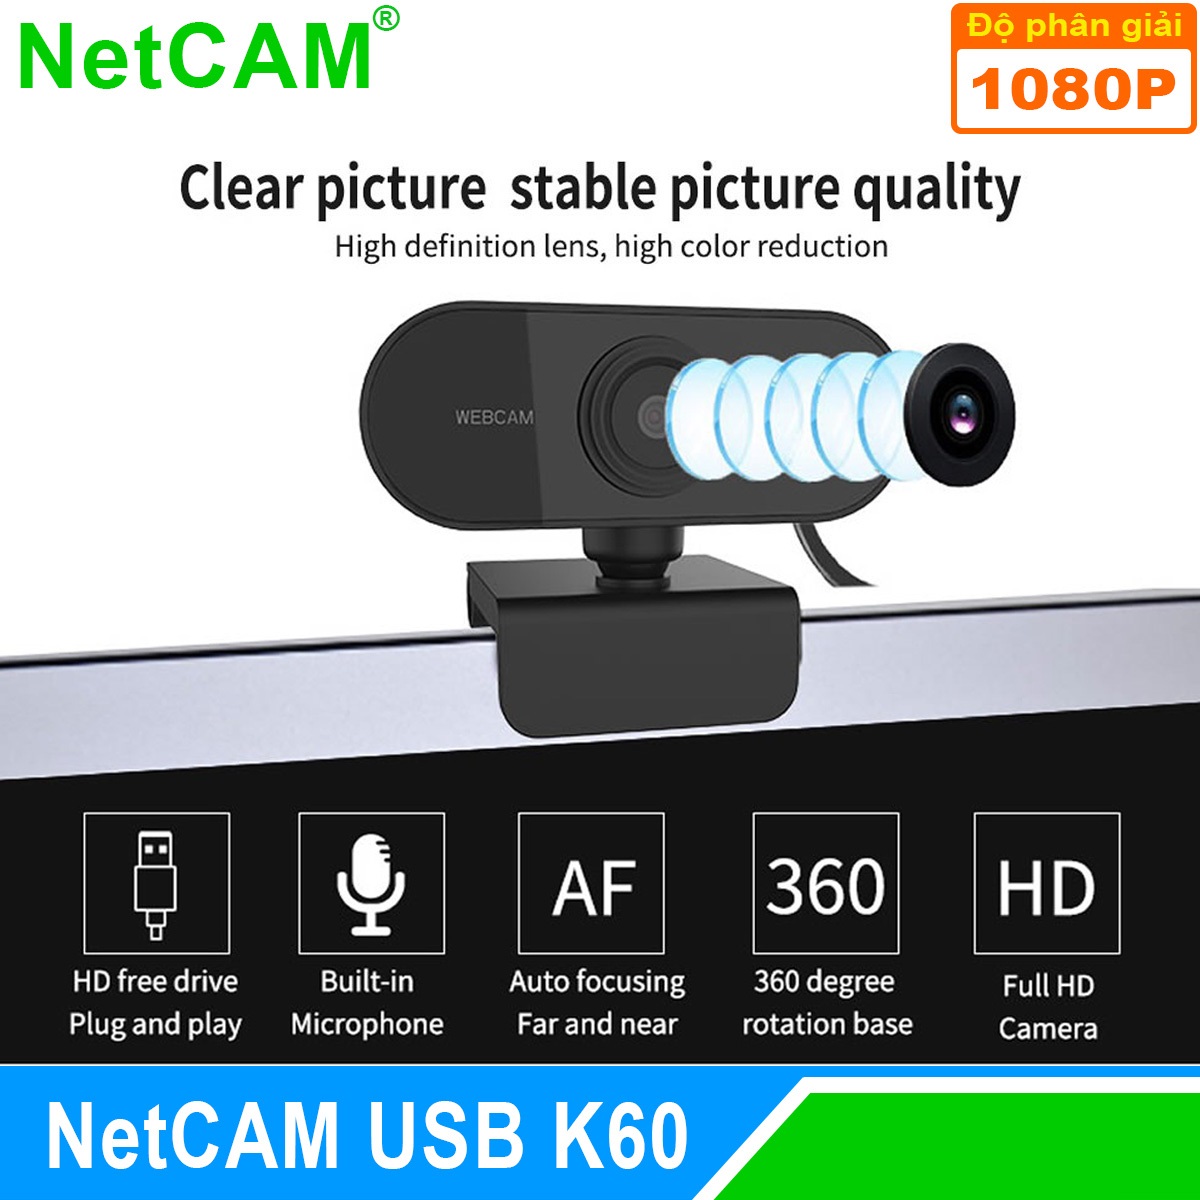 Webcam Netcam USB K60 1080P - Hàng Chính Hãng